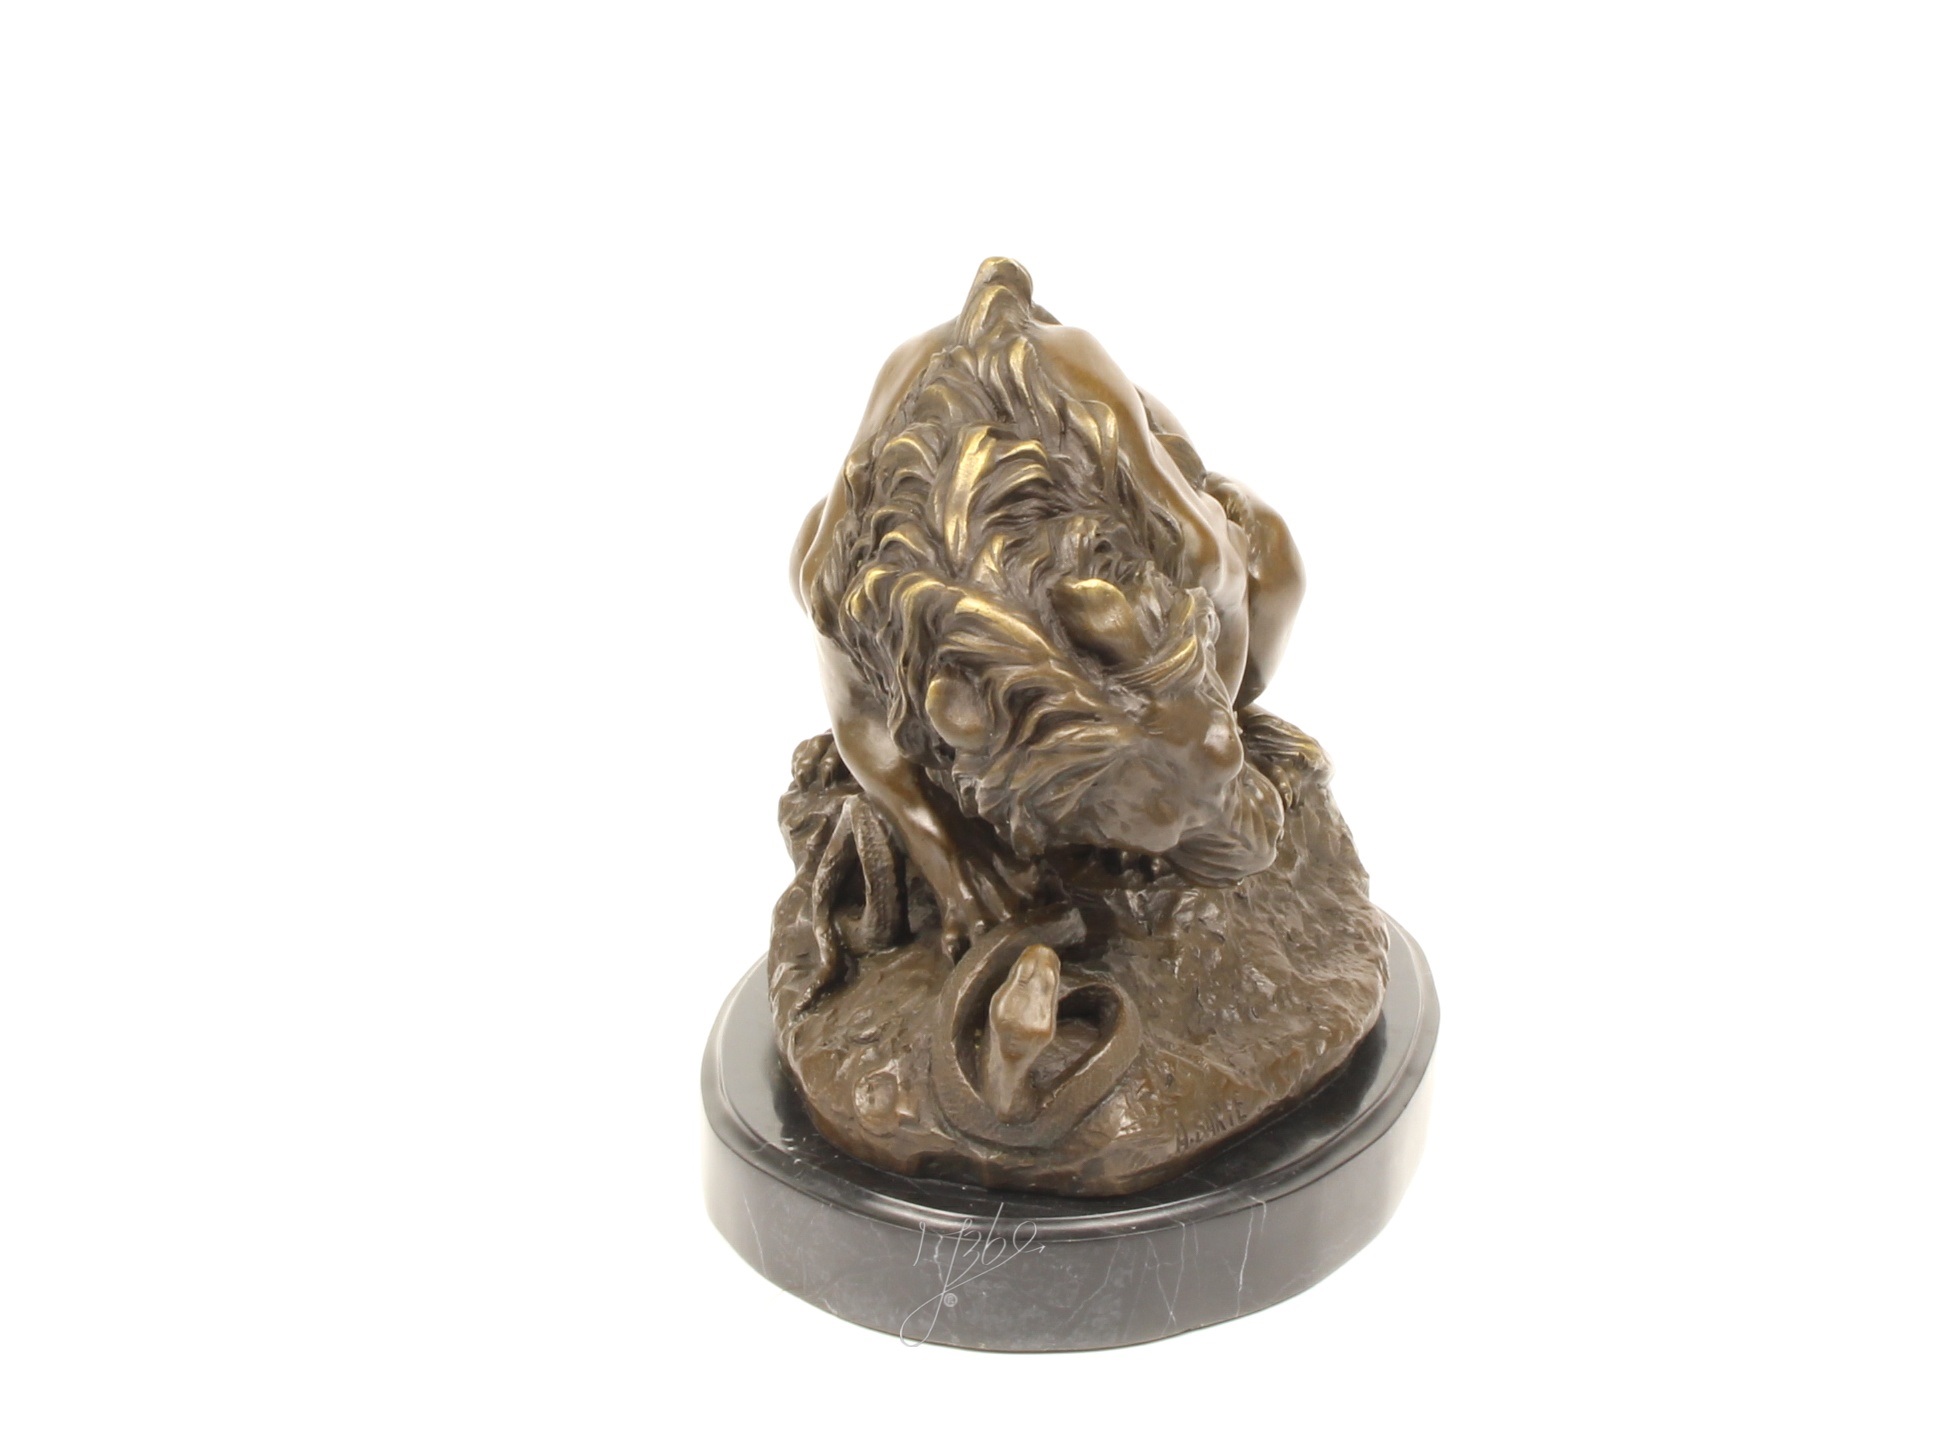 Een bronzen beeld van een leeuw en slang